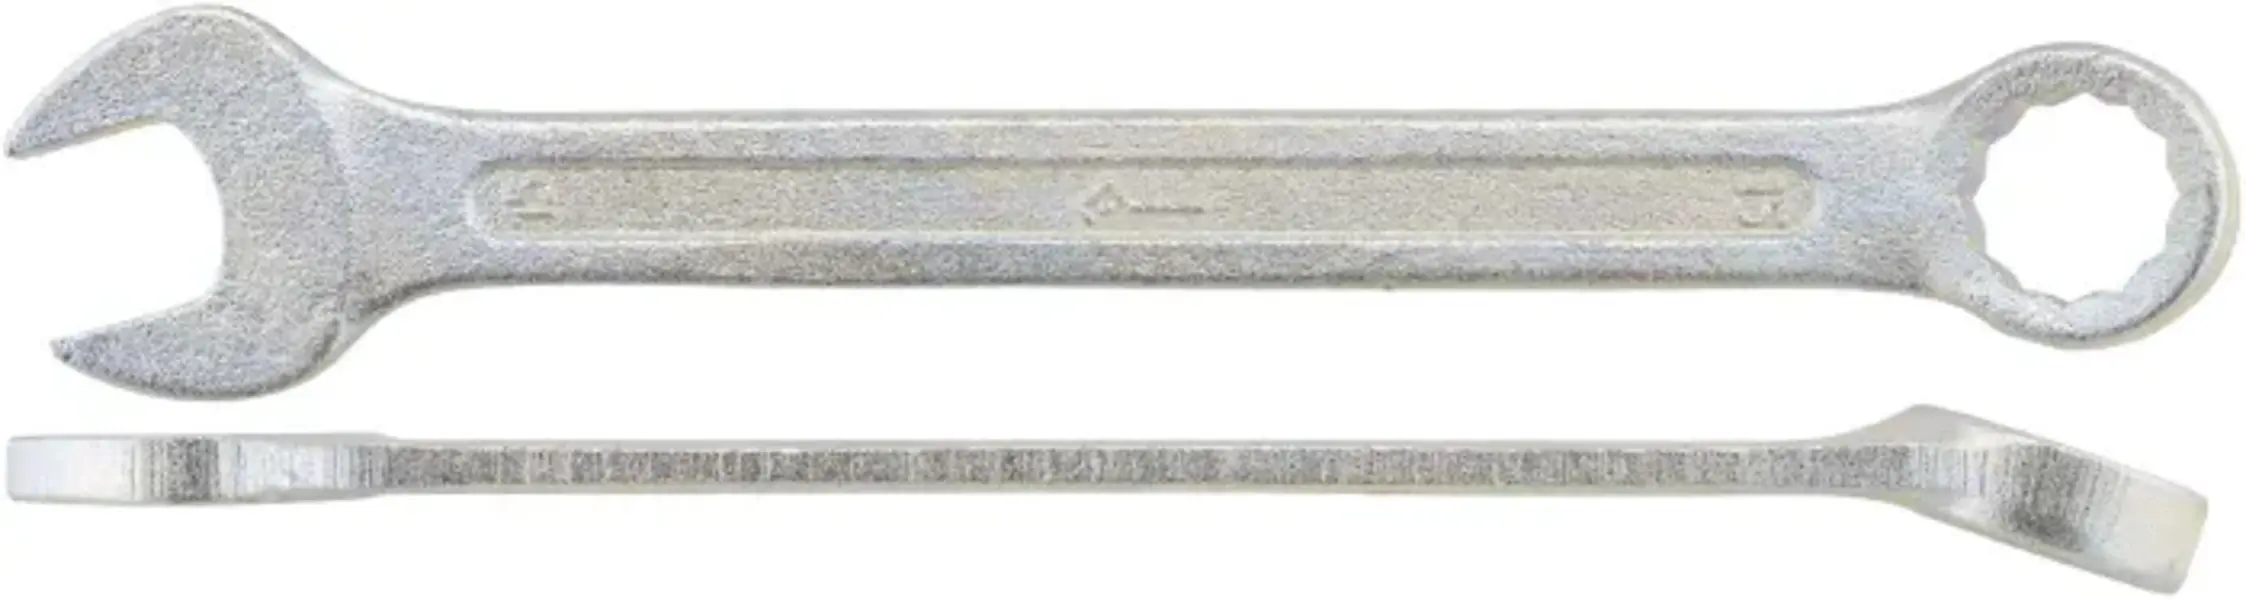 Ключ Комбинированный 30 Кзсми КЗСМИ арт. 51551210